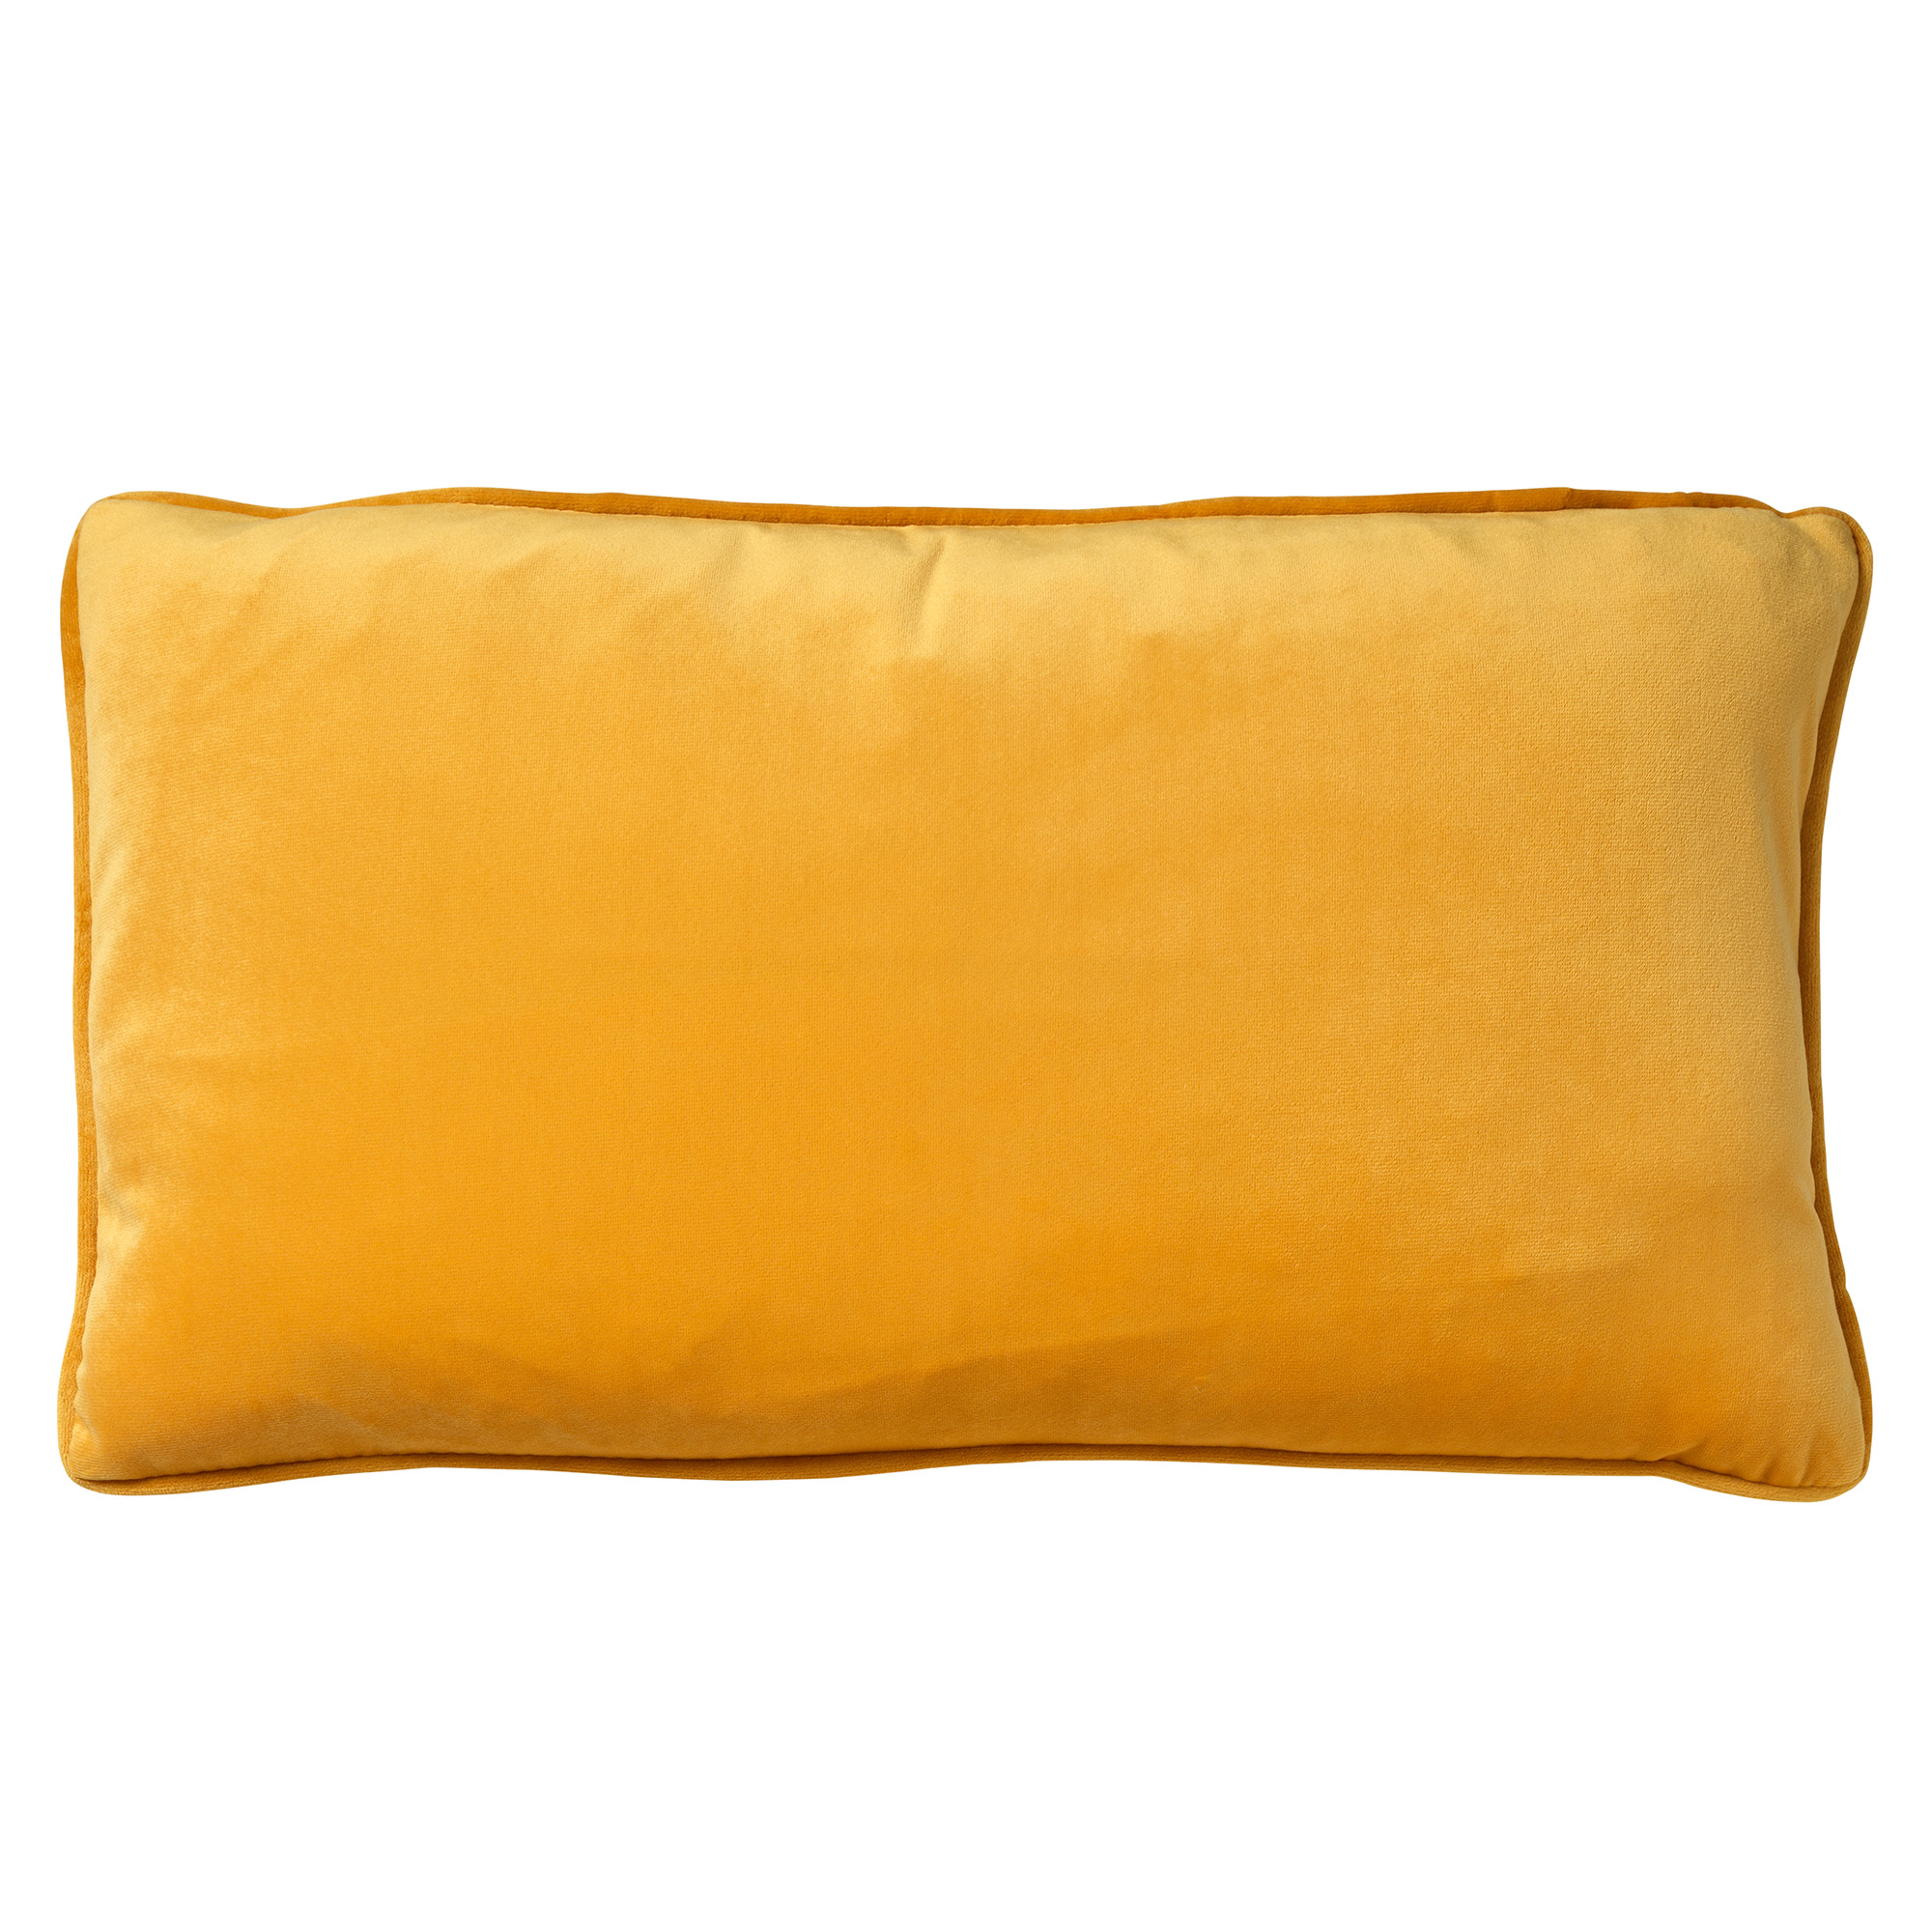 FINN - Cushion 30x50 cm Golden Glow - yellow-ochre